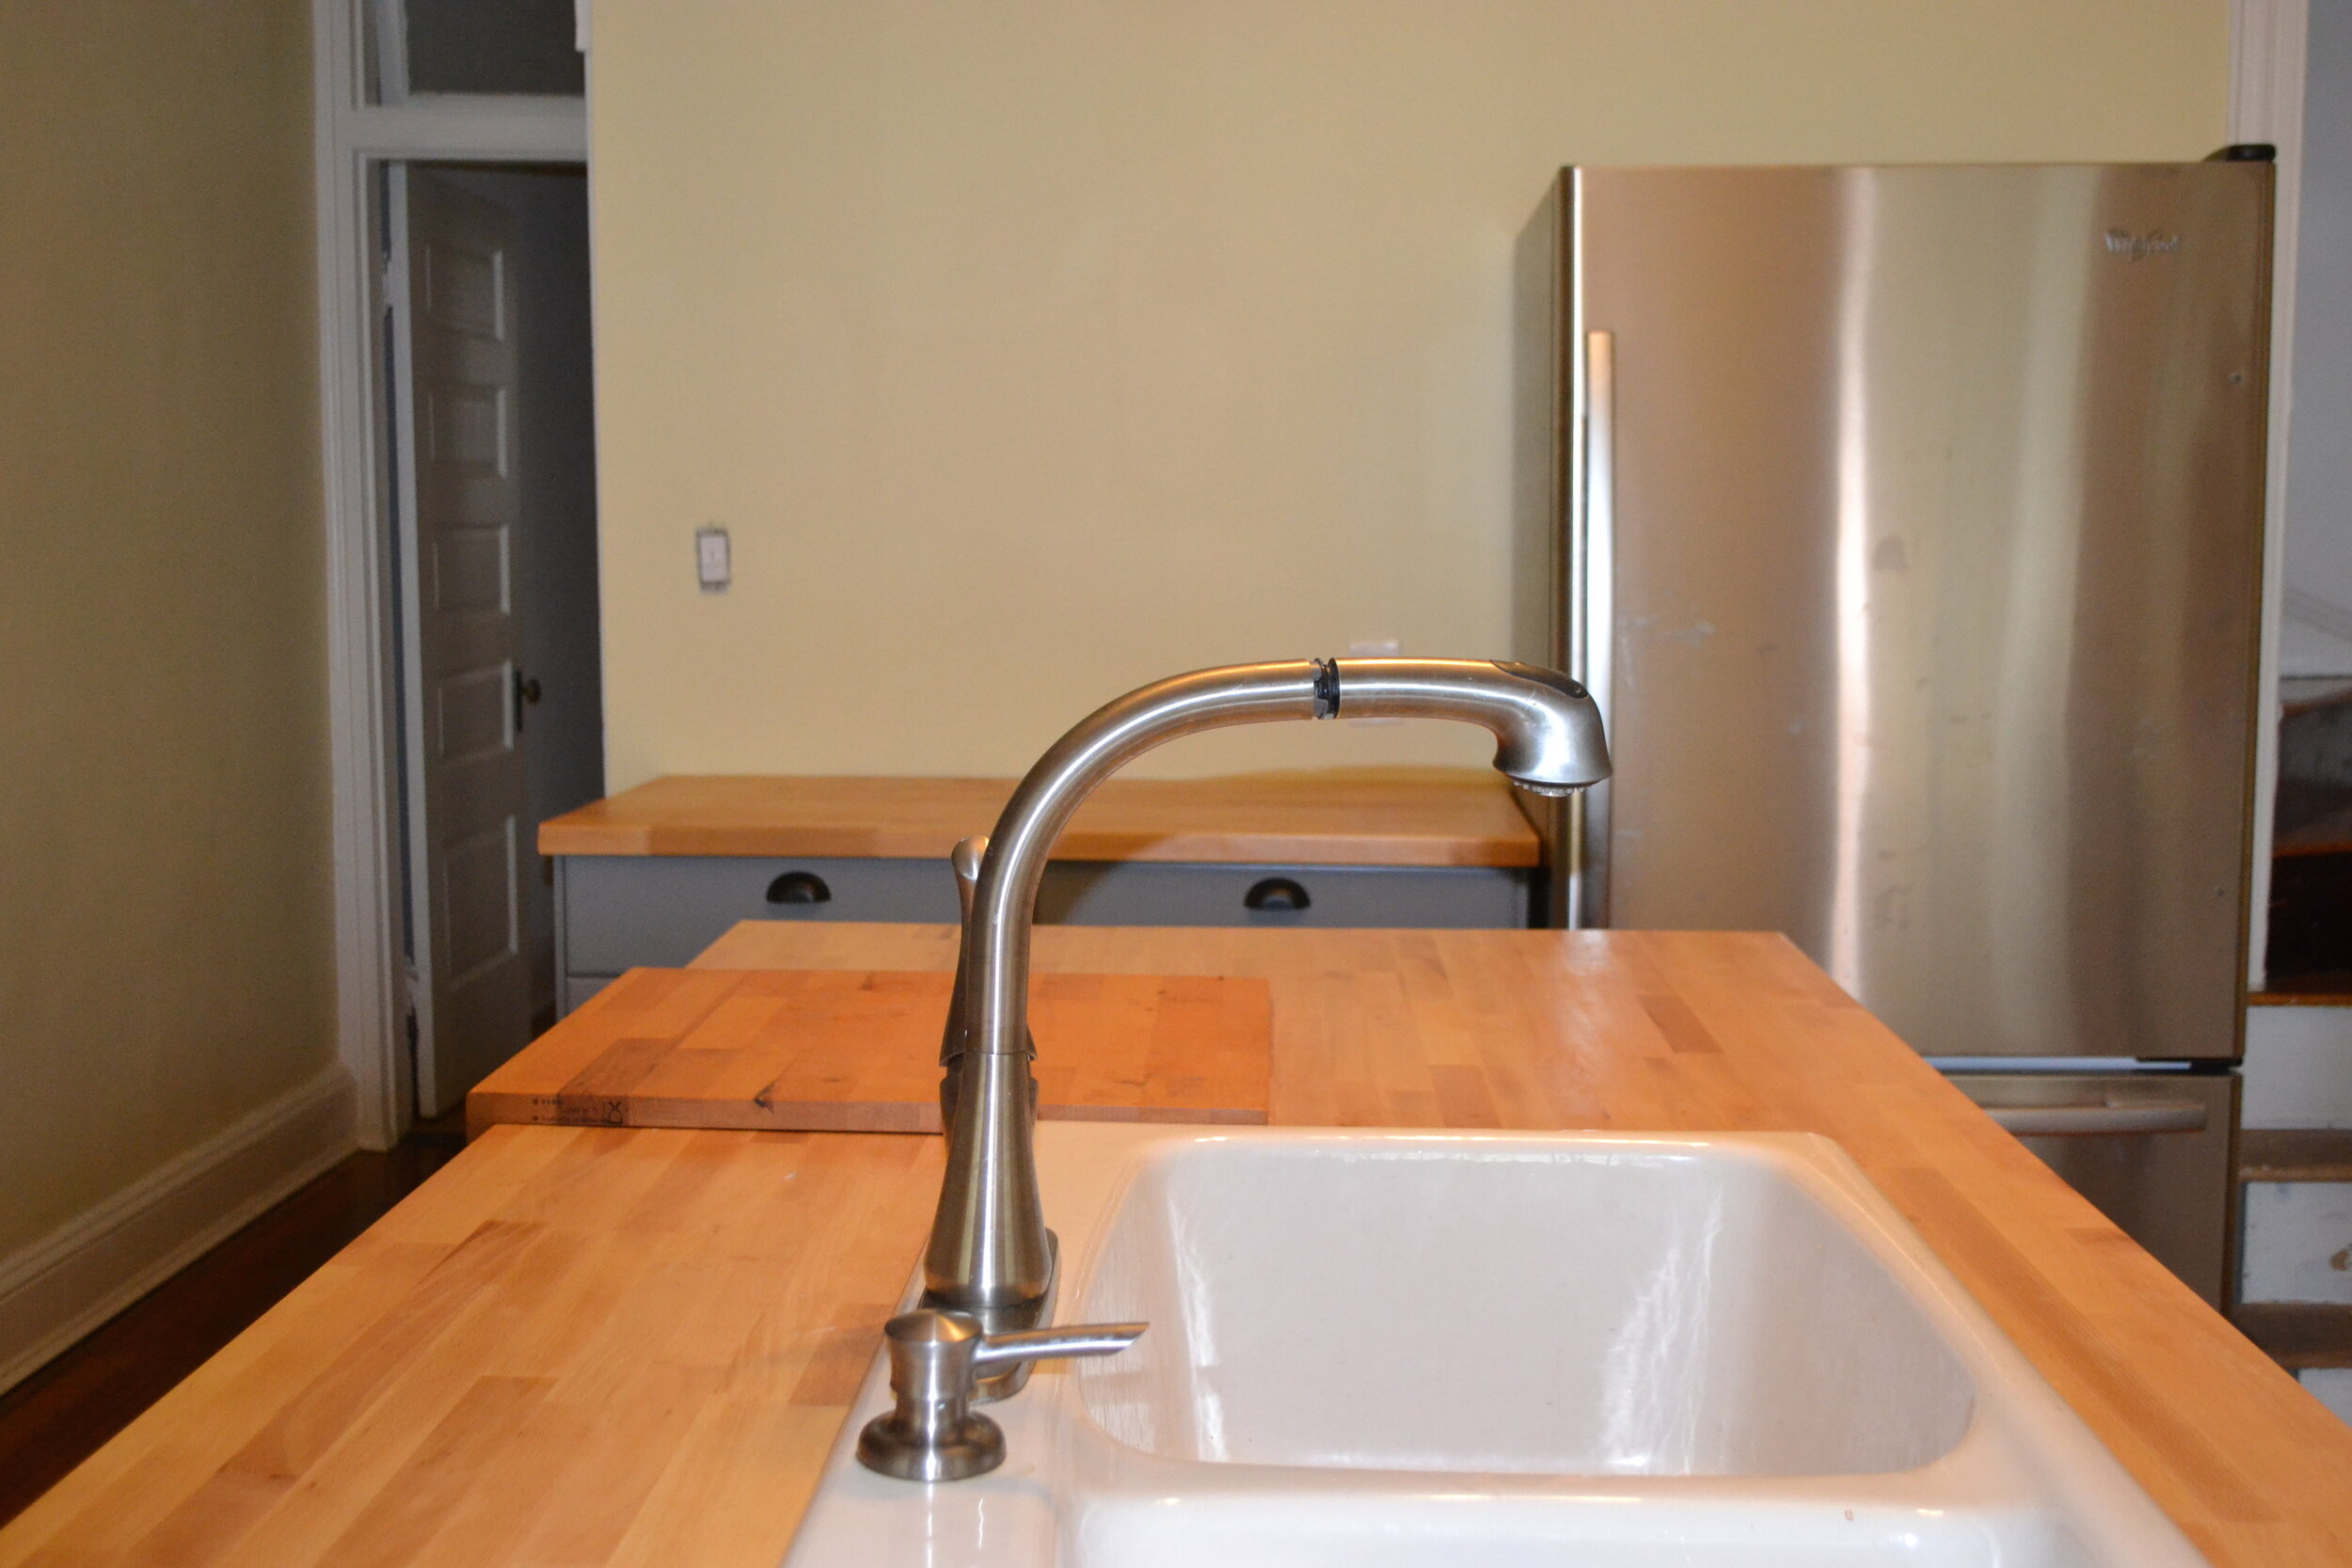 2922.Duplex.Kitchen Counter+Sink.jpg